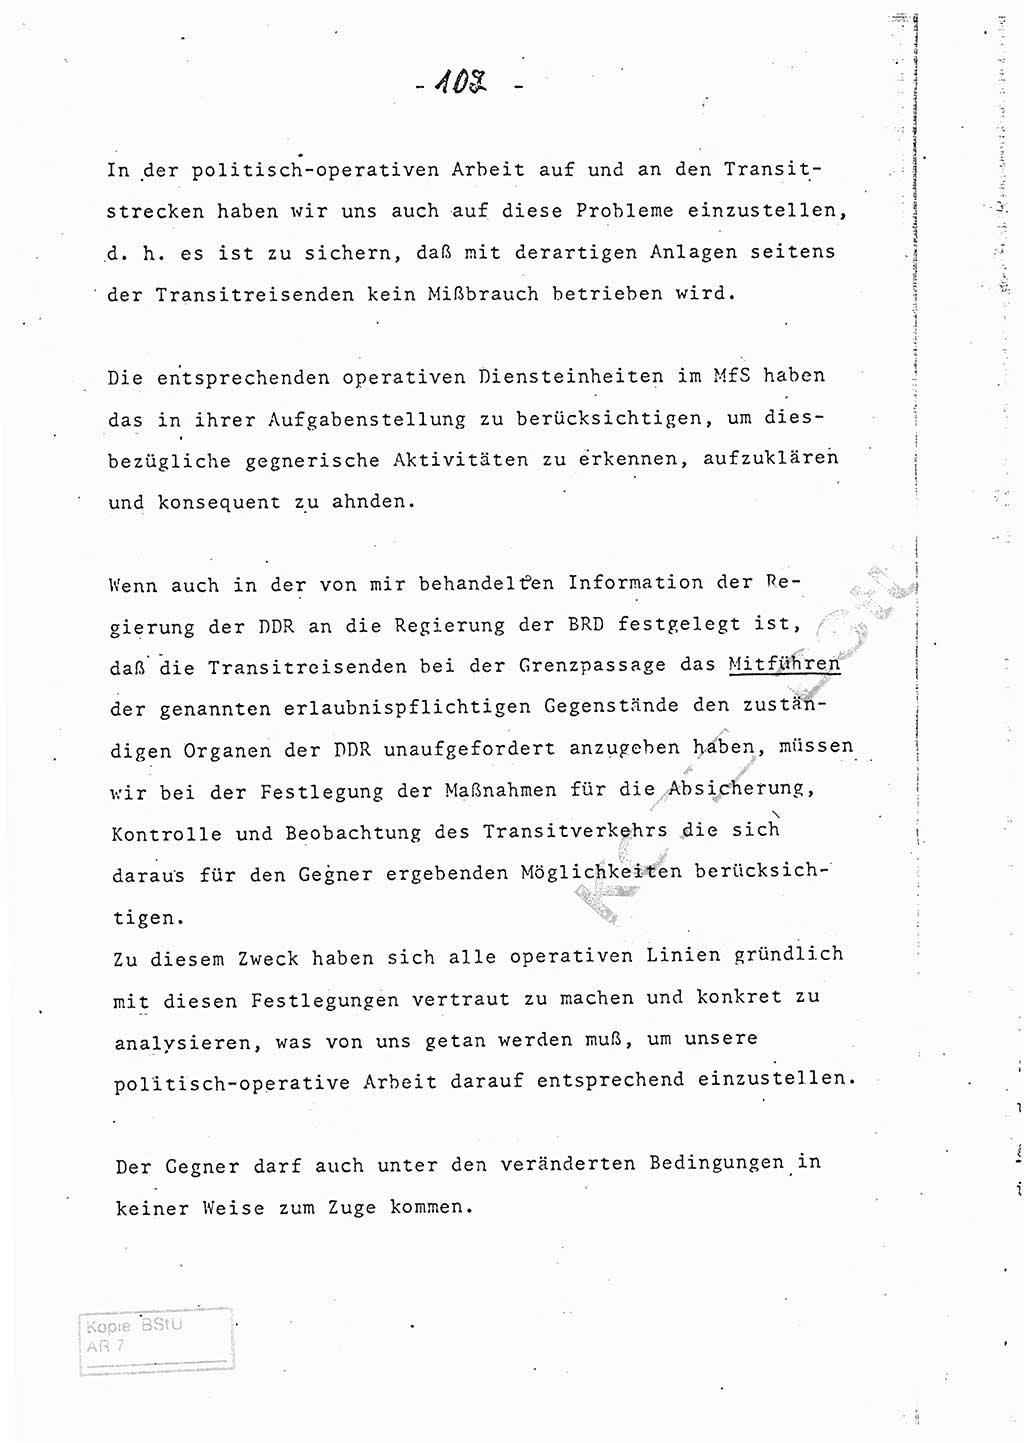 Referat (Entwurf) des Genossen Minister (Generaloberst Erich Mielke) auf der Dienstkonferenz 1972, Ministerium für Staatssicherheit (MfS) [Deutsche Demokratische Republik (DDR)], Der Minister, Geheime Verschlußsache (GVS) 008-150/72, Berlin 25.2.1972, Seite 102 (Ref. Entw. DK MfS DDR Min. GVS 008-150/72 1972, S. 102)